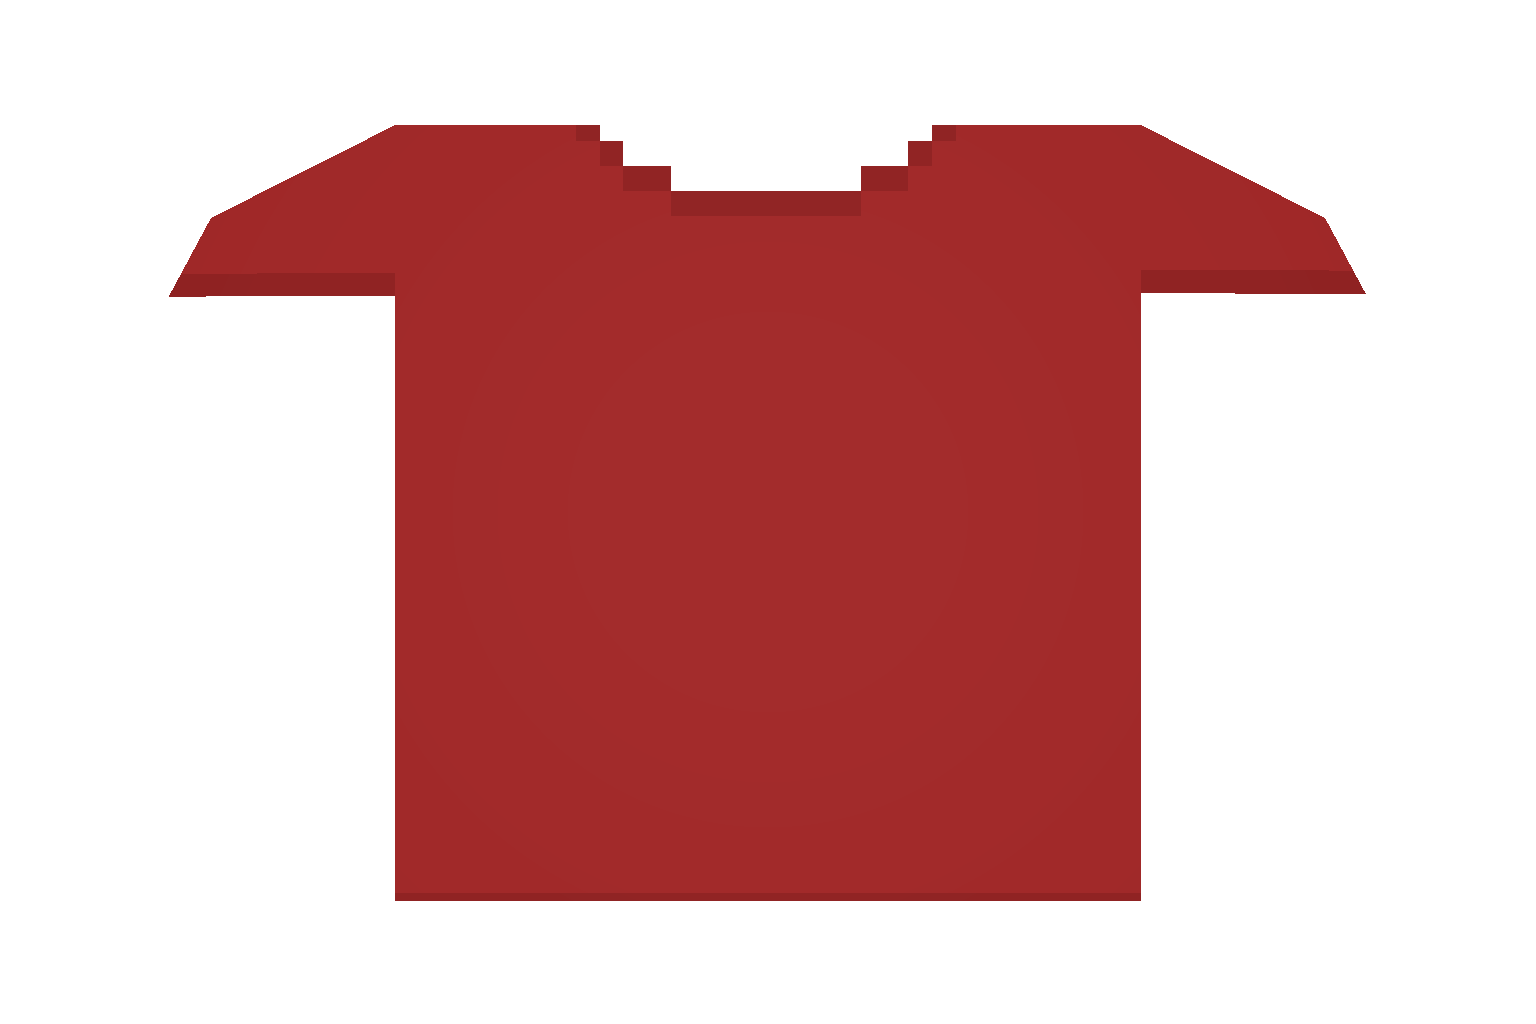 1536 1024. Футболки для РОБЛОКСА красные. Порванная футболка PNG. Футболка Unturned. Одежда антернед PNG.